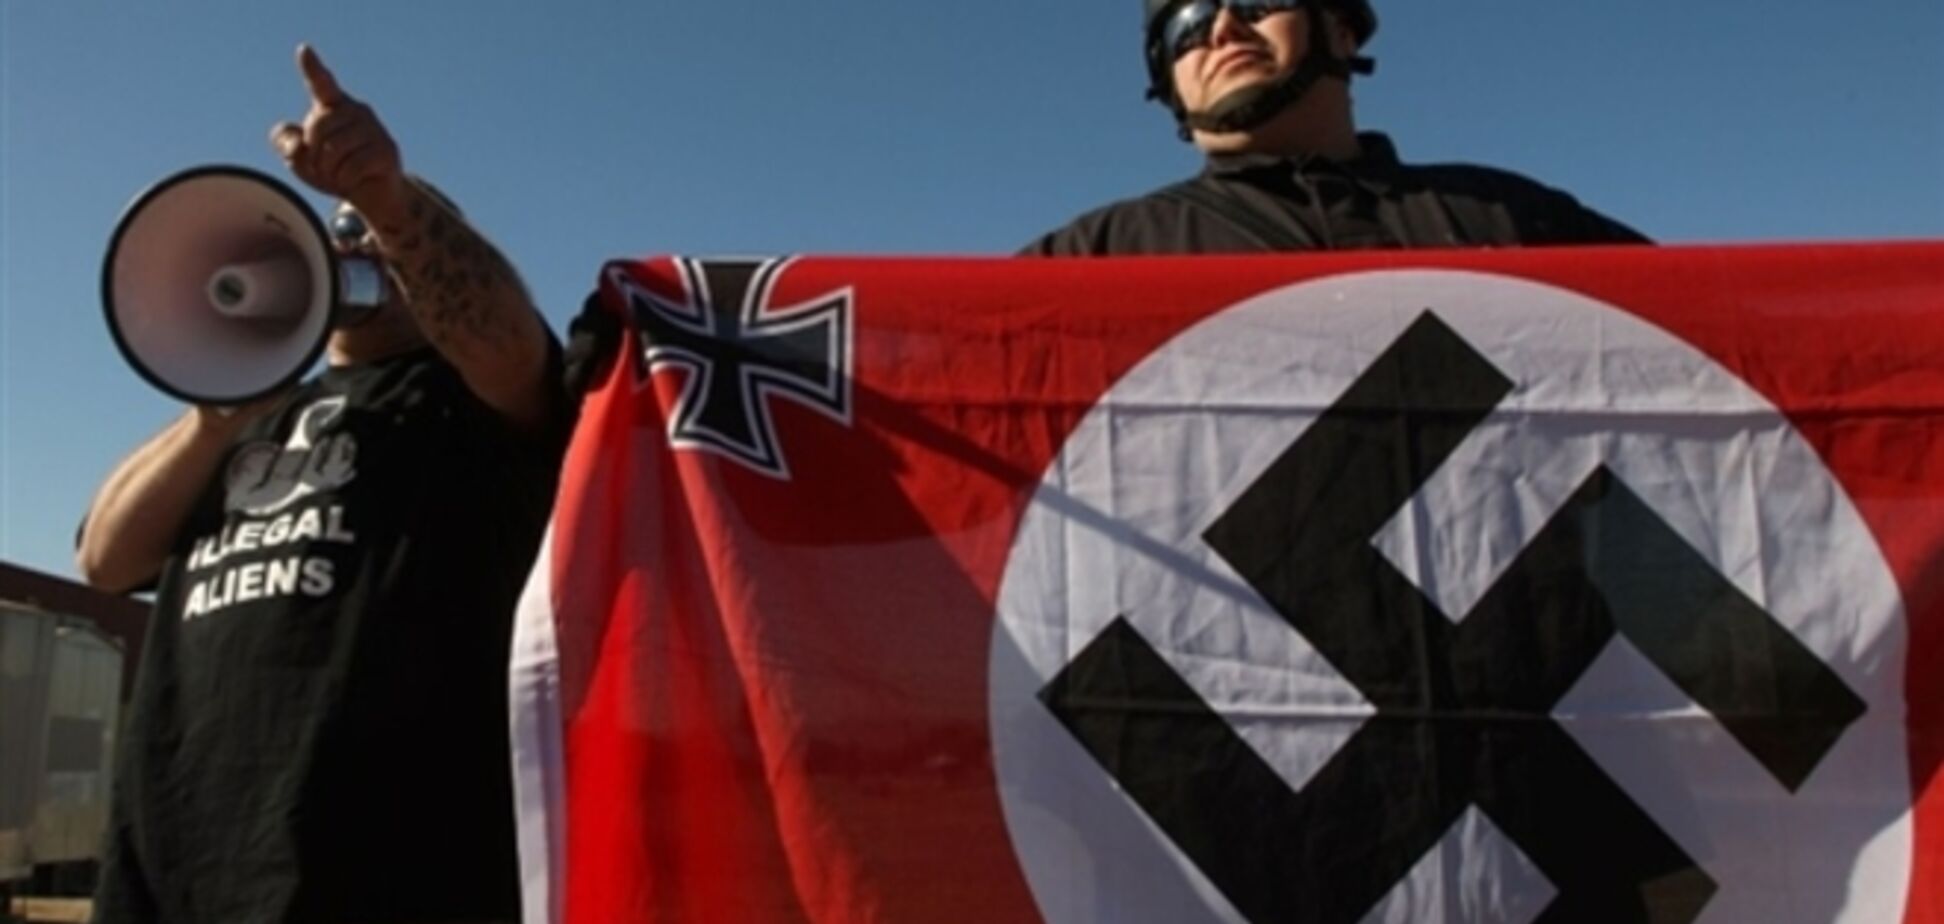 В России ввели штрафы за публичную демонстрацию нацистской символики